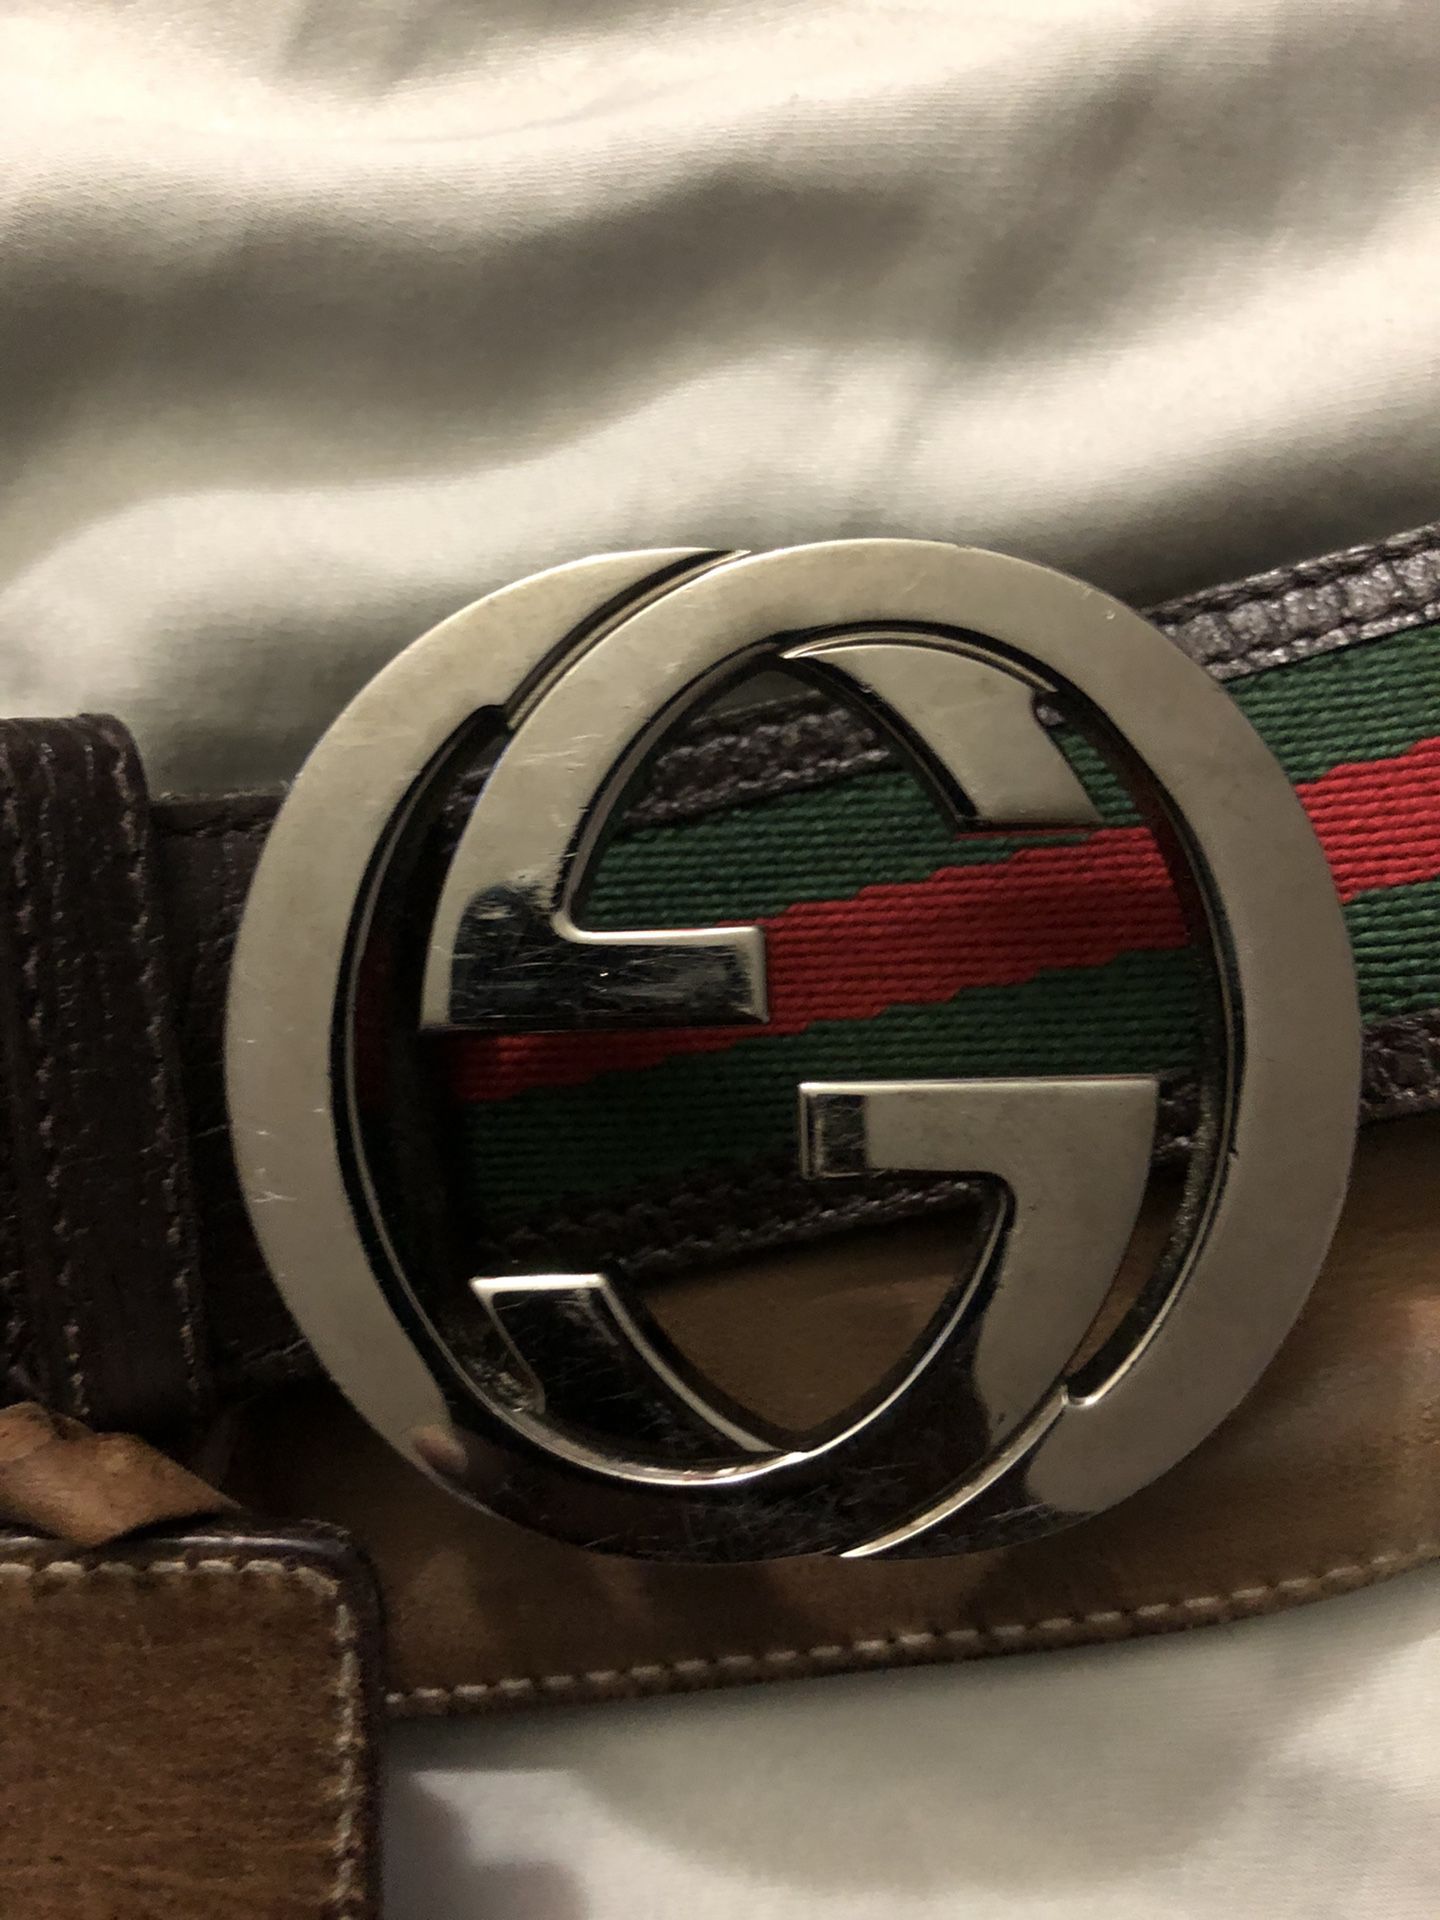 Authentic Gucci Belt 